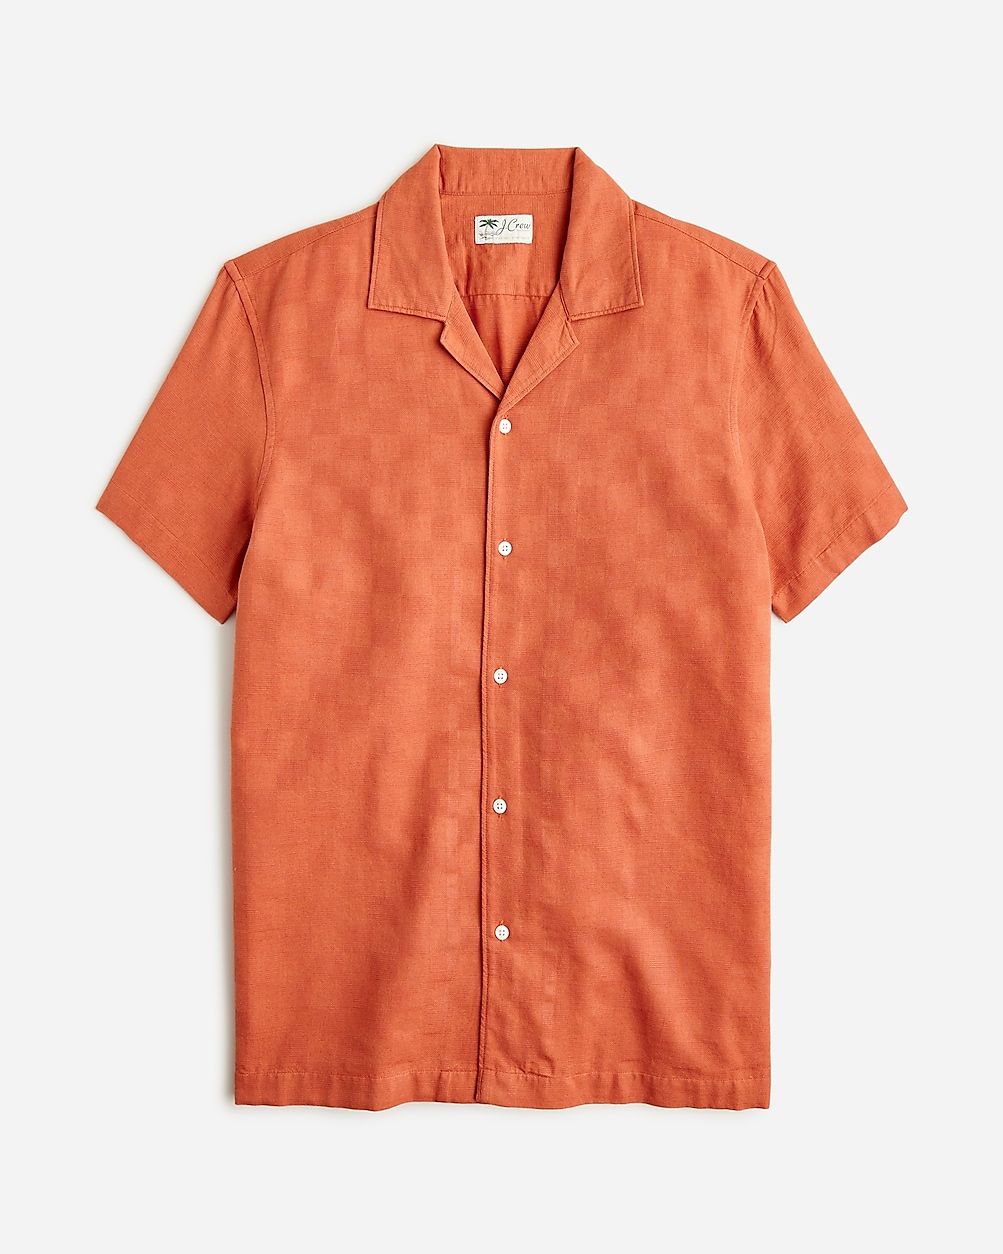 Short-sleeve textured cotton camp-collar shirt | J.Crew US